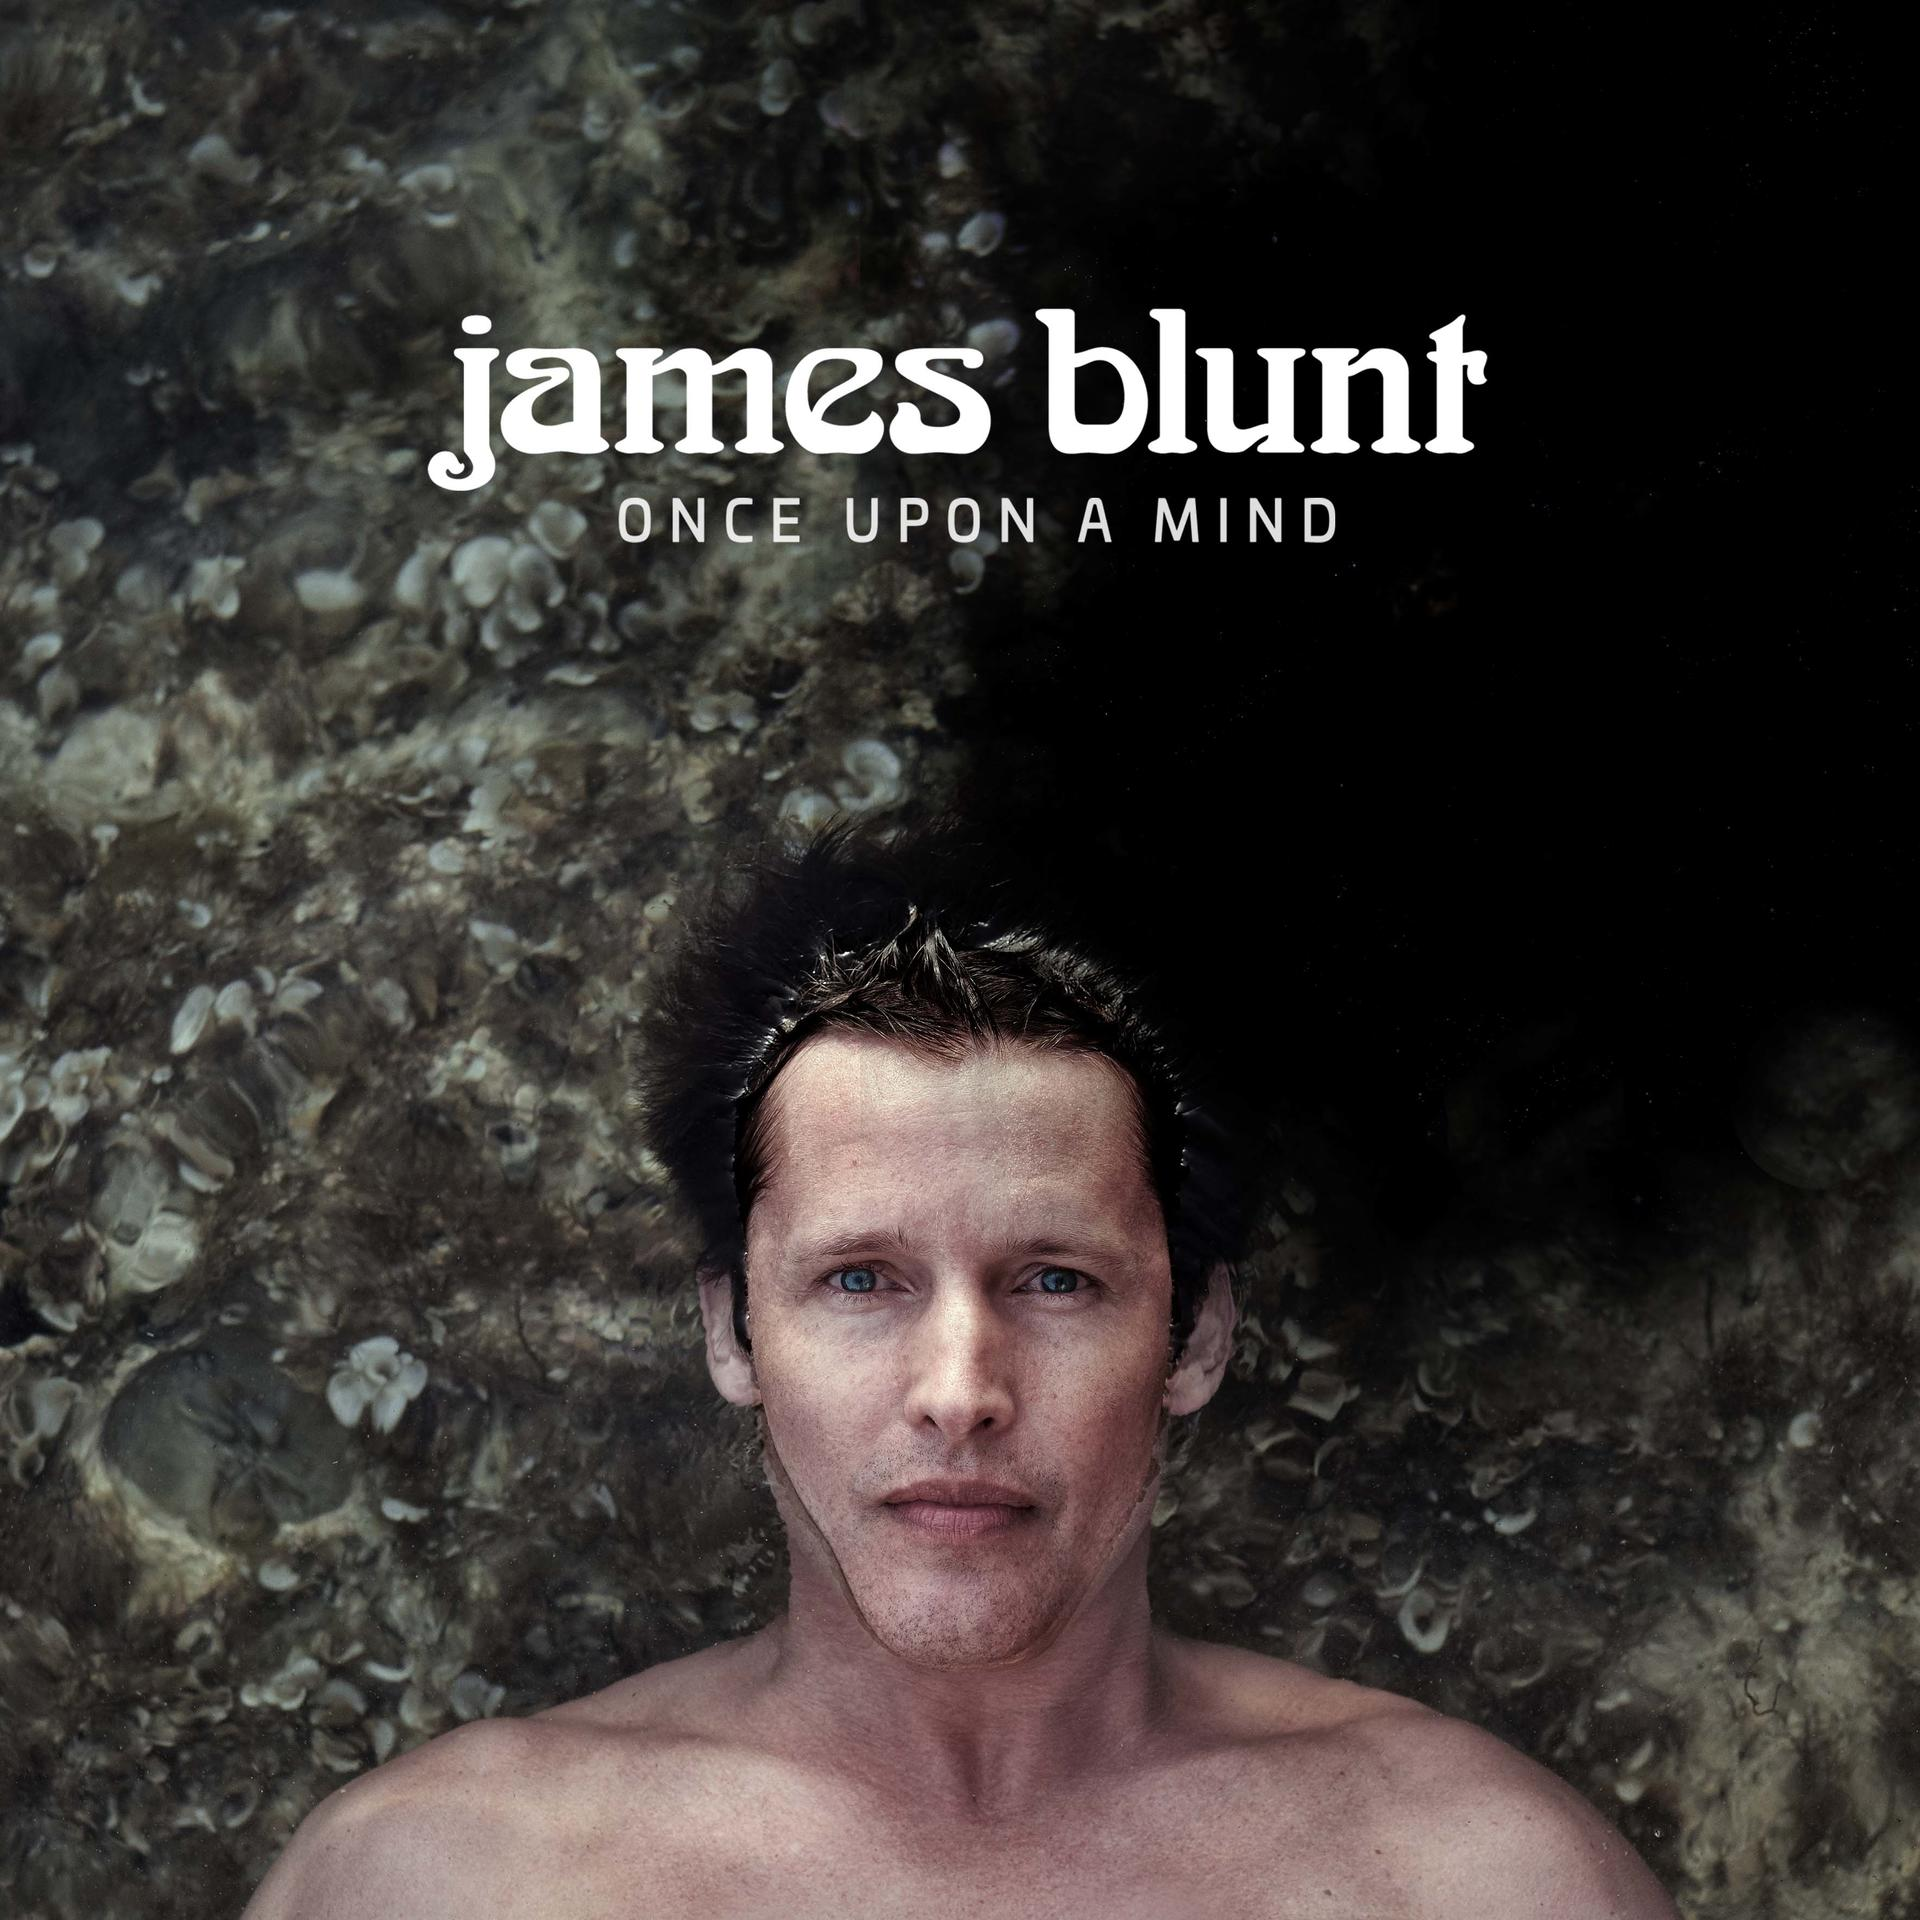 Blunt - A Once Mind Upon - (CD) James